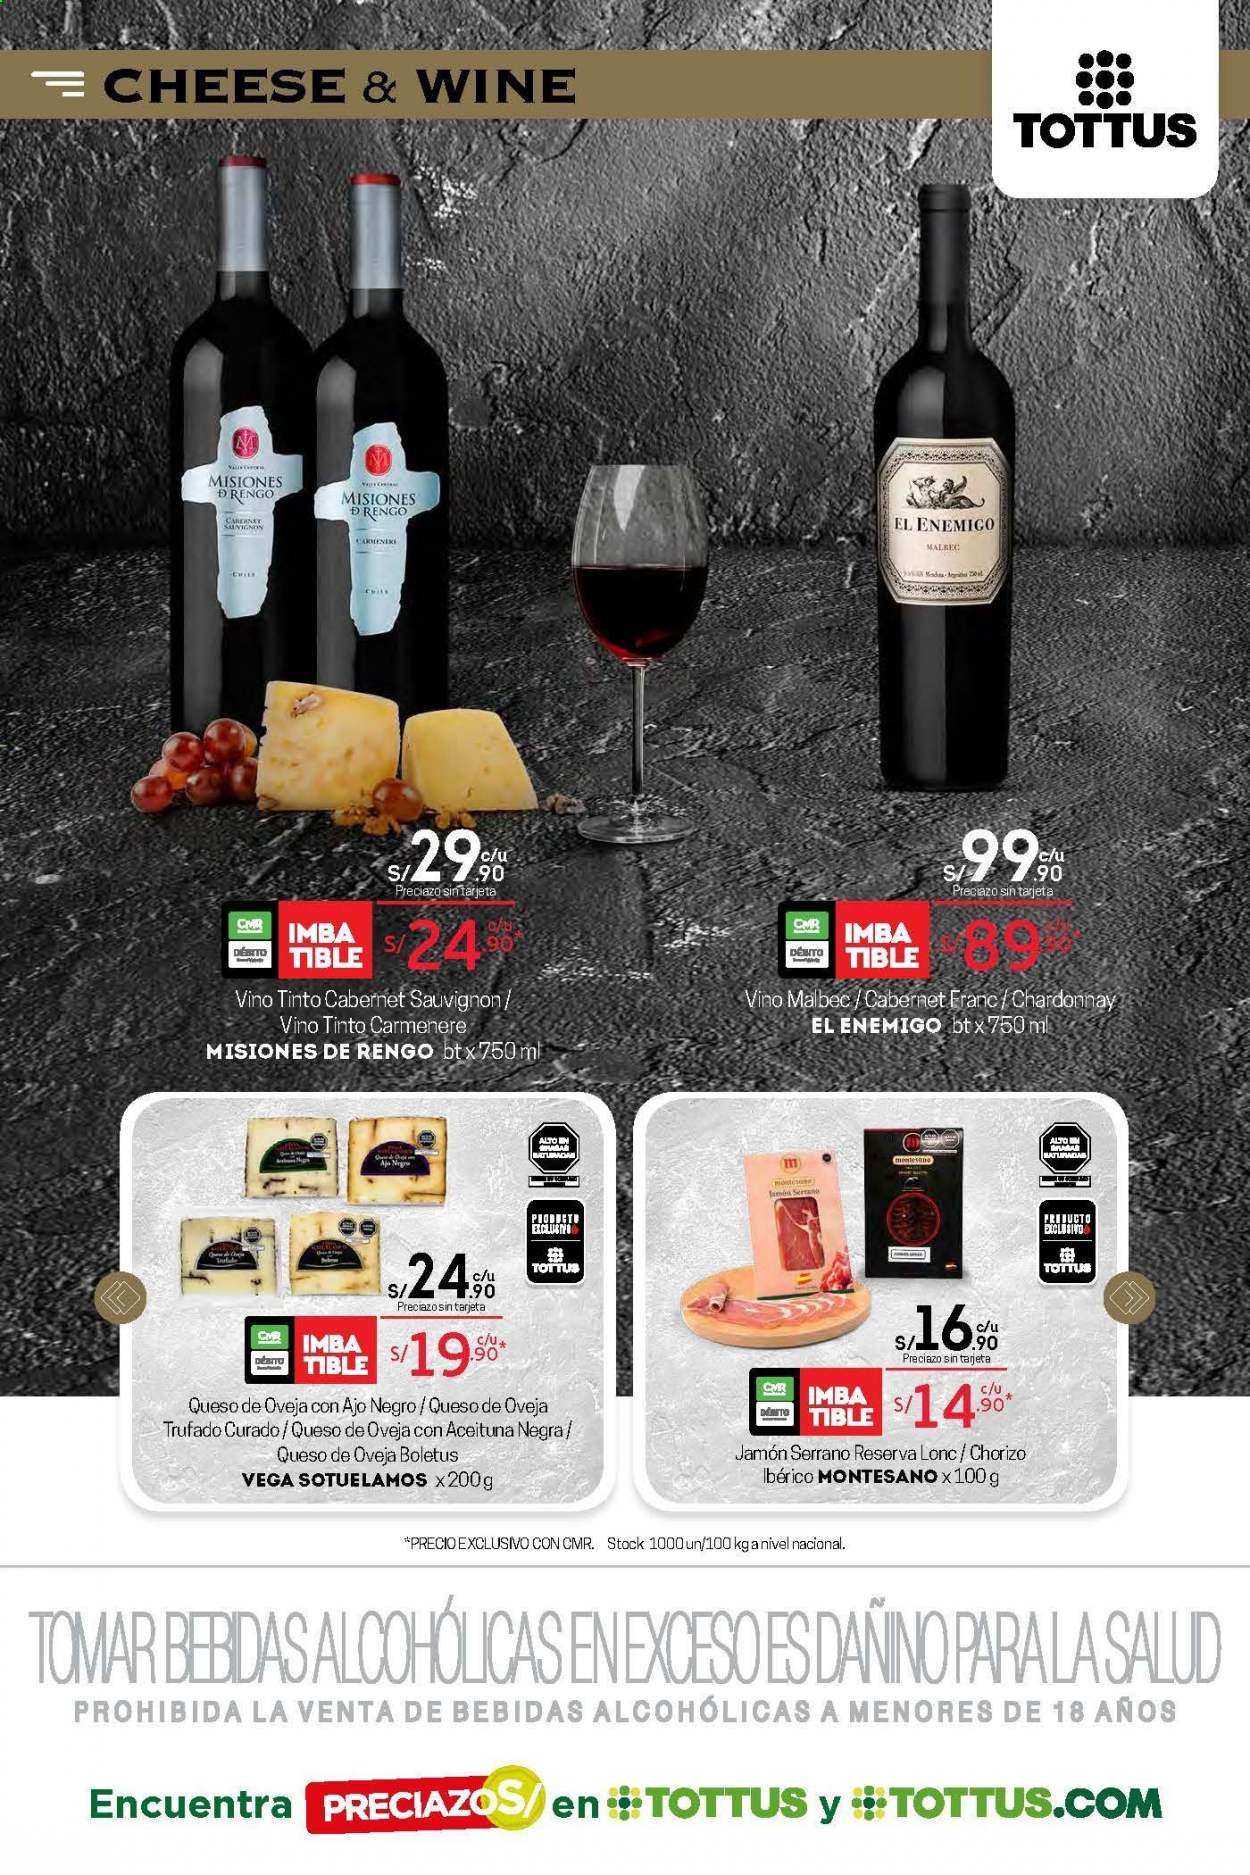 thumbnail - Folleto actual Tottus - 29.1.2021 - 11.2.2021 - Ventas - jamón, chorizo, jamón serrano, queso de oveja, vino, Cabernet Sauvignon, Chardonnay, vino tinto. Página 15.